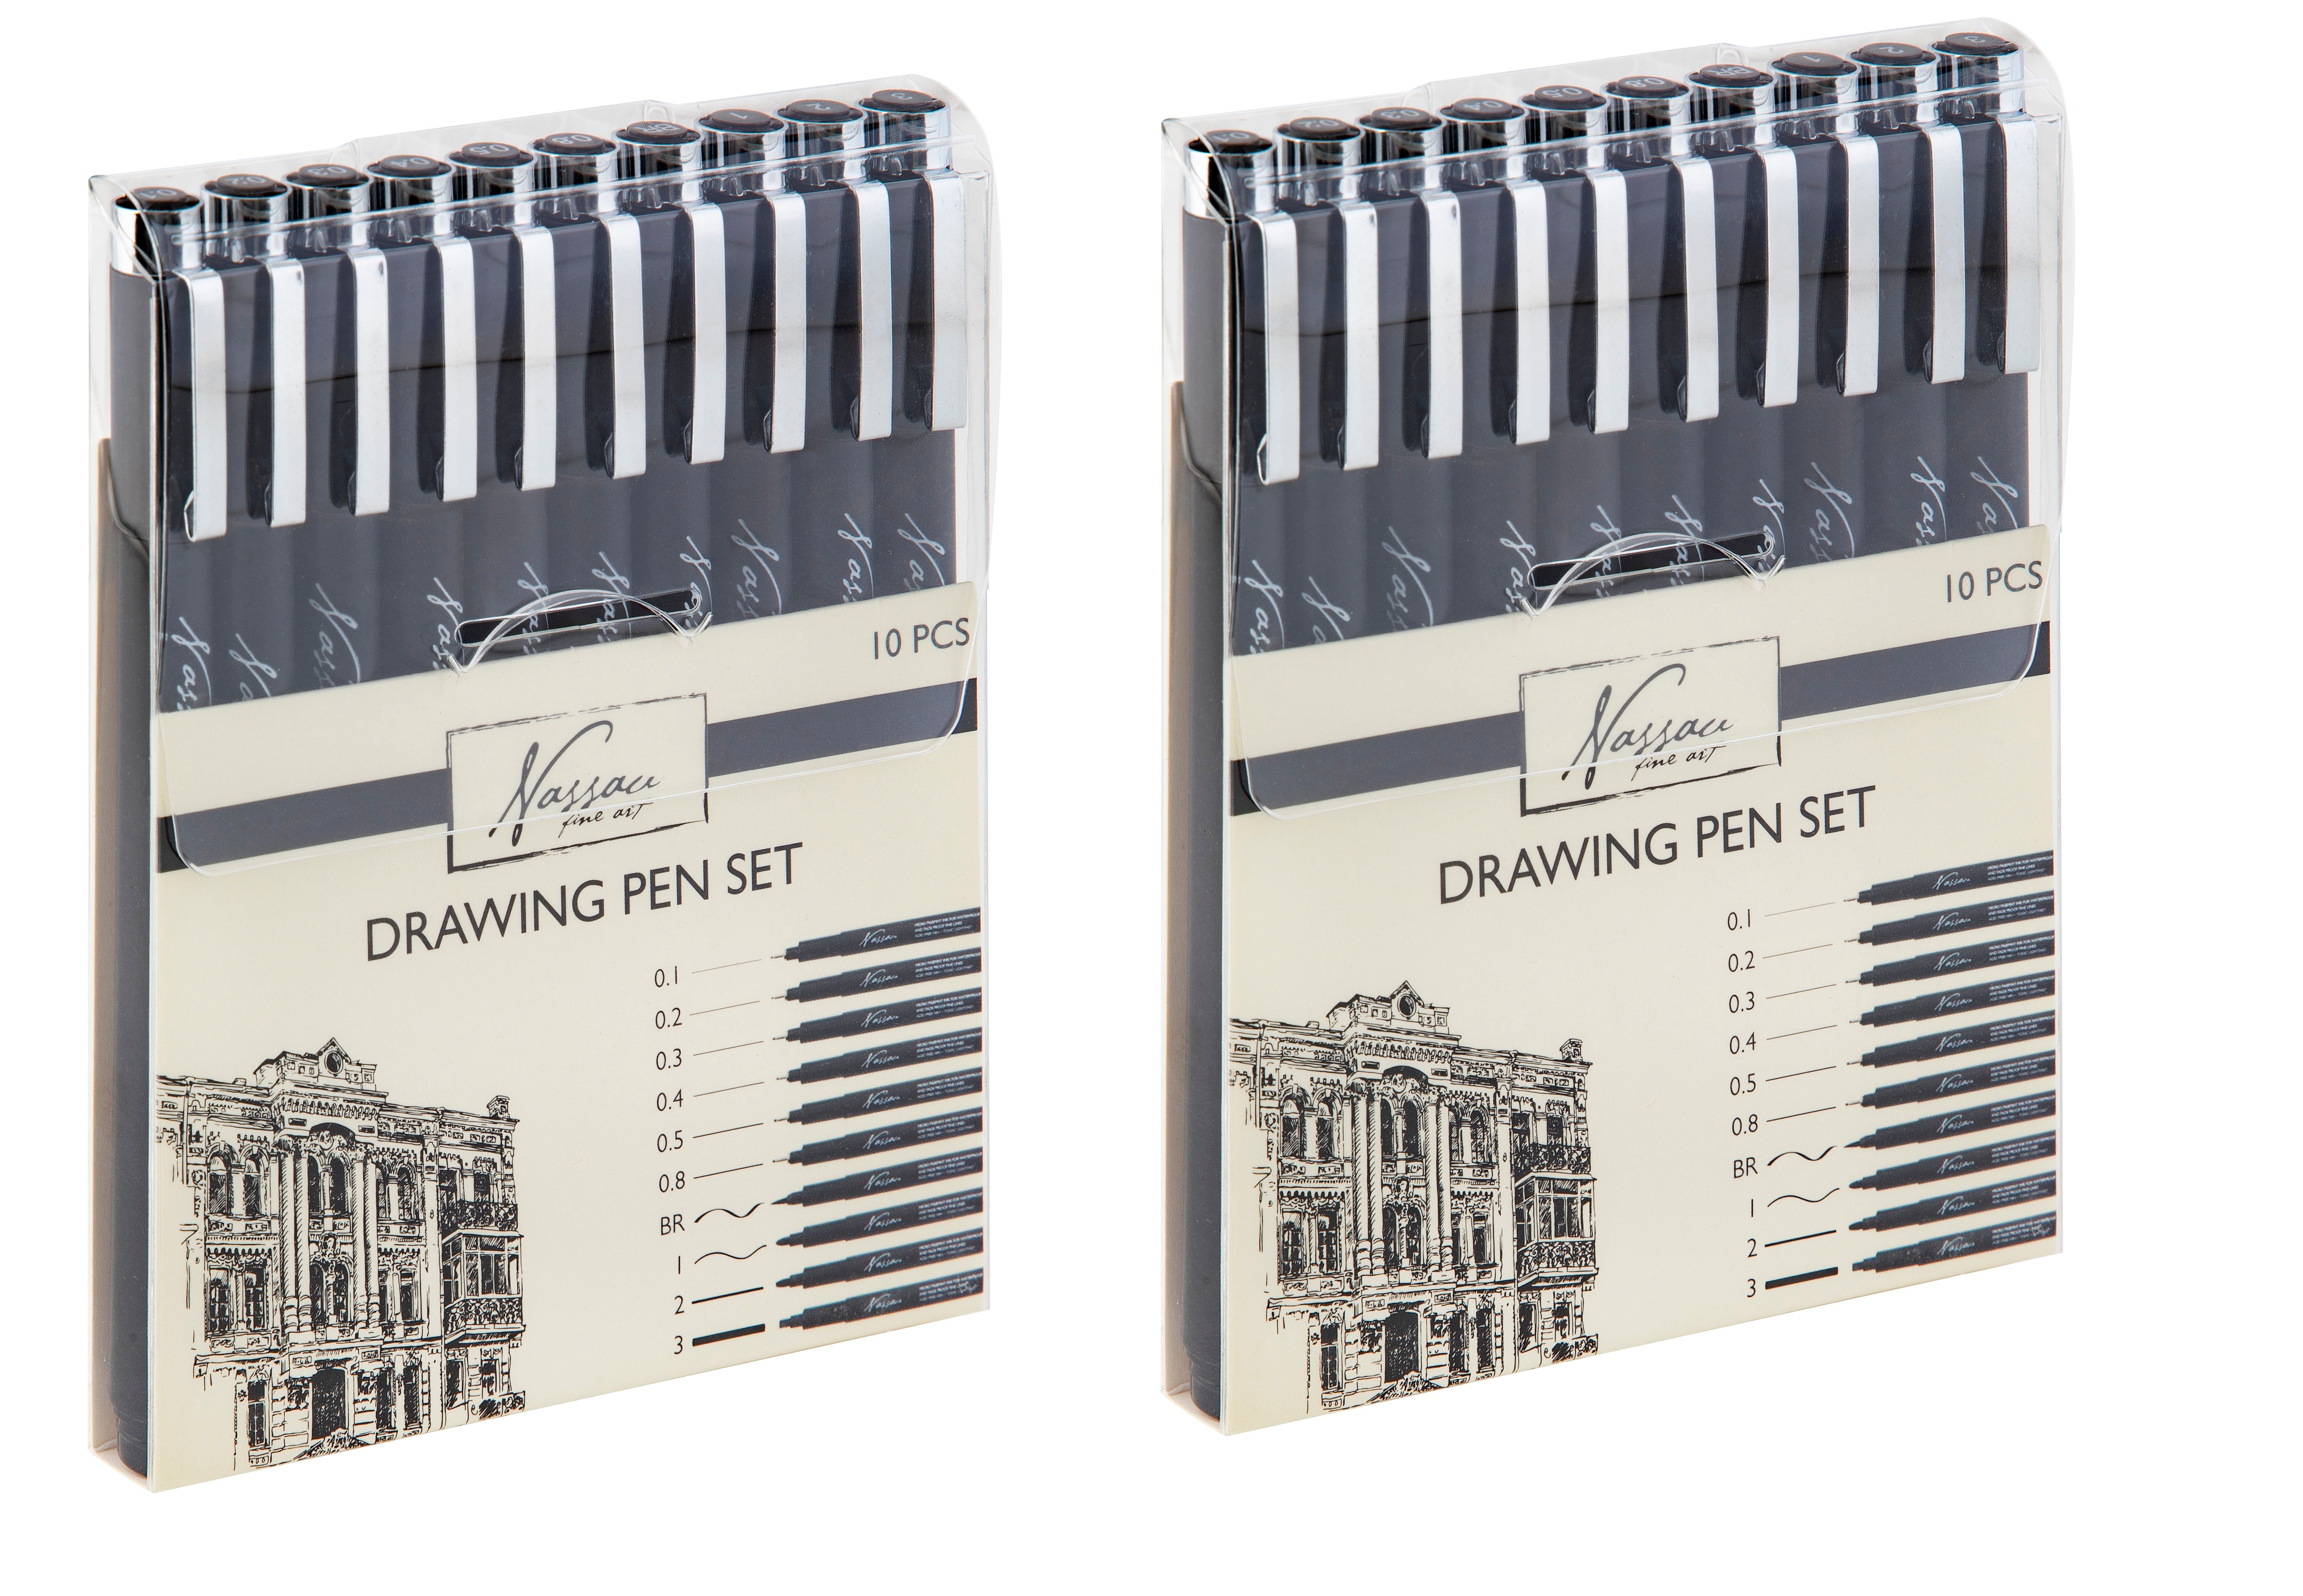 Nassau - Drawing pen set fineliners 10pcs x 2 - Bundle